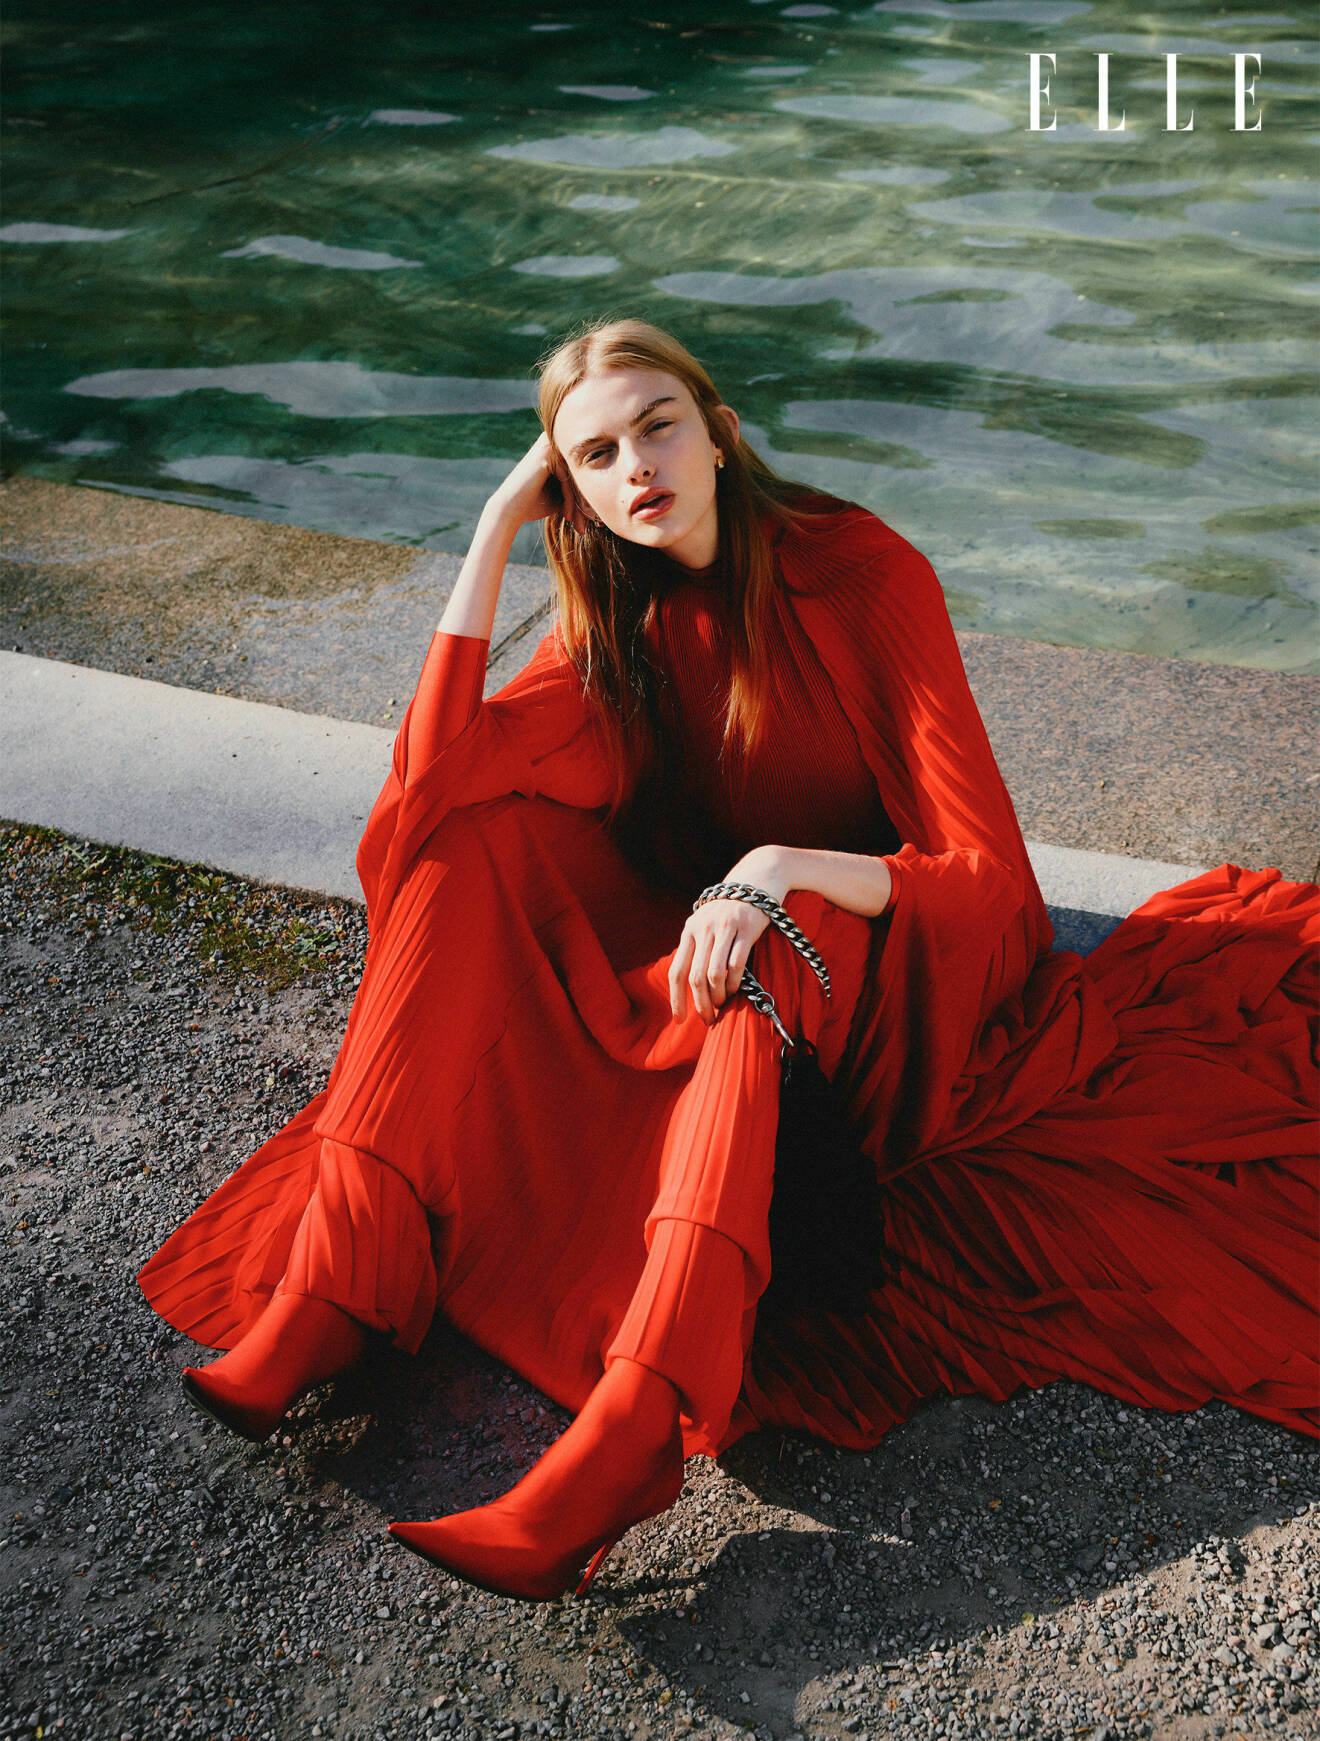 Modellen sitter ner, hon har på sig en röd maxiklänning och röda skor, allt från Balenciaga.